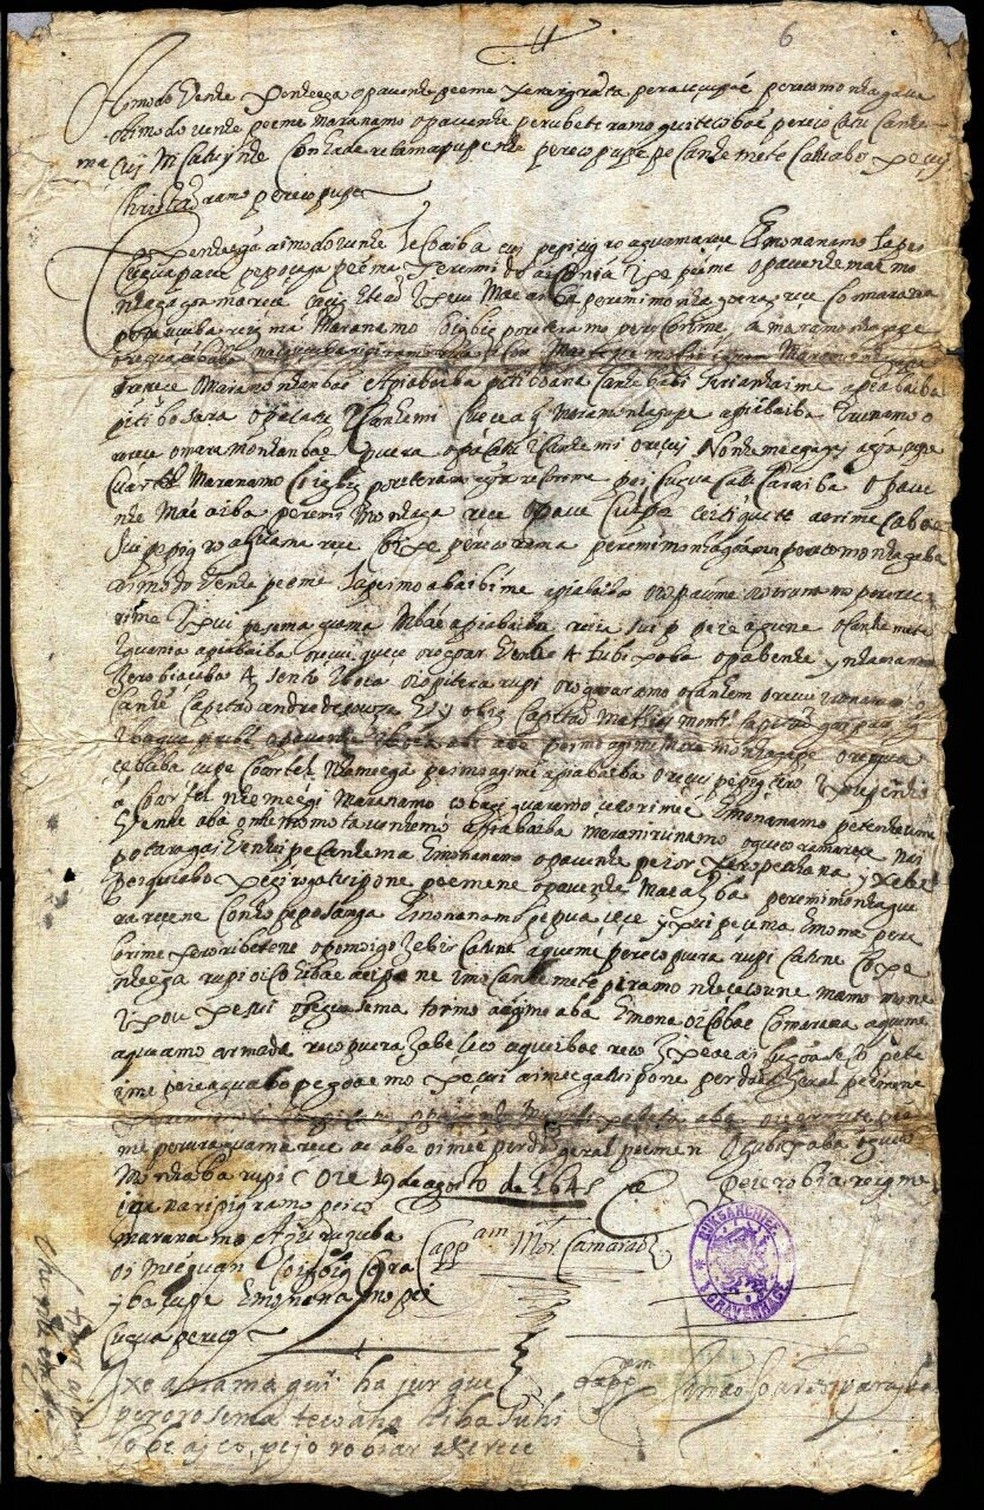 Cartas do século 17 são traduzidas do tupi pela 1ª vez na história